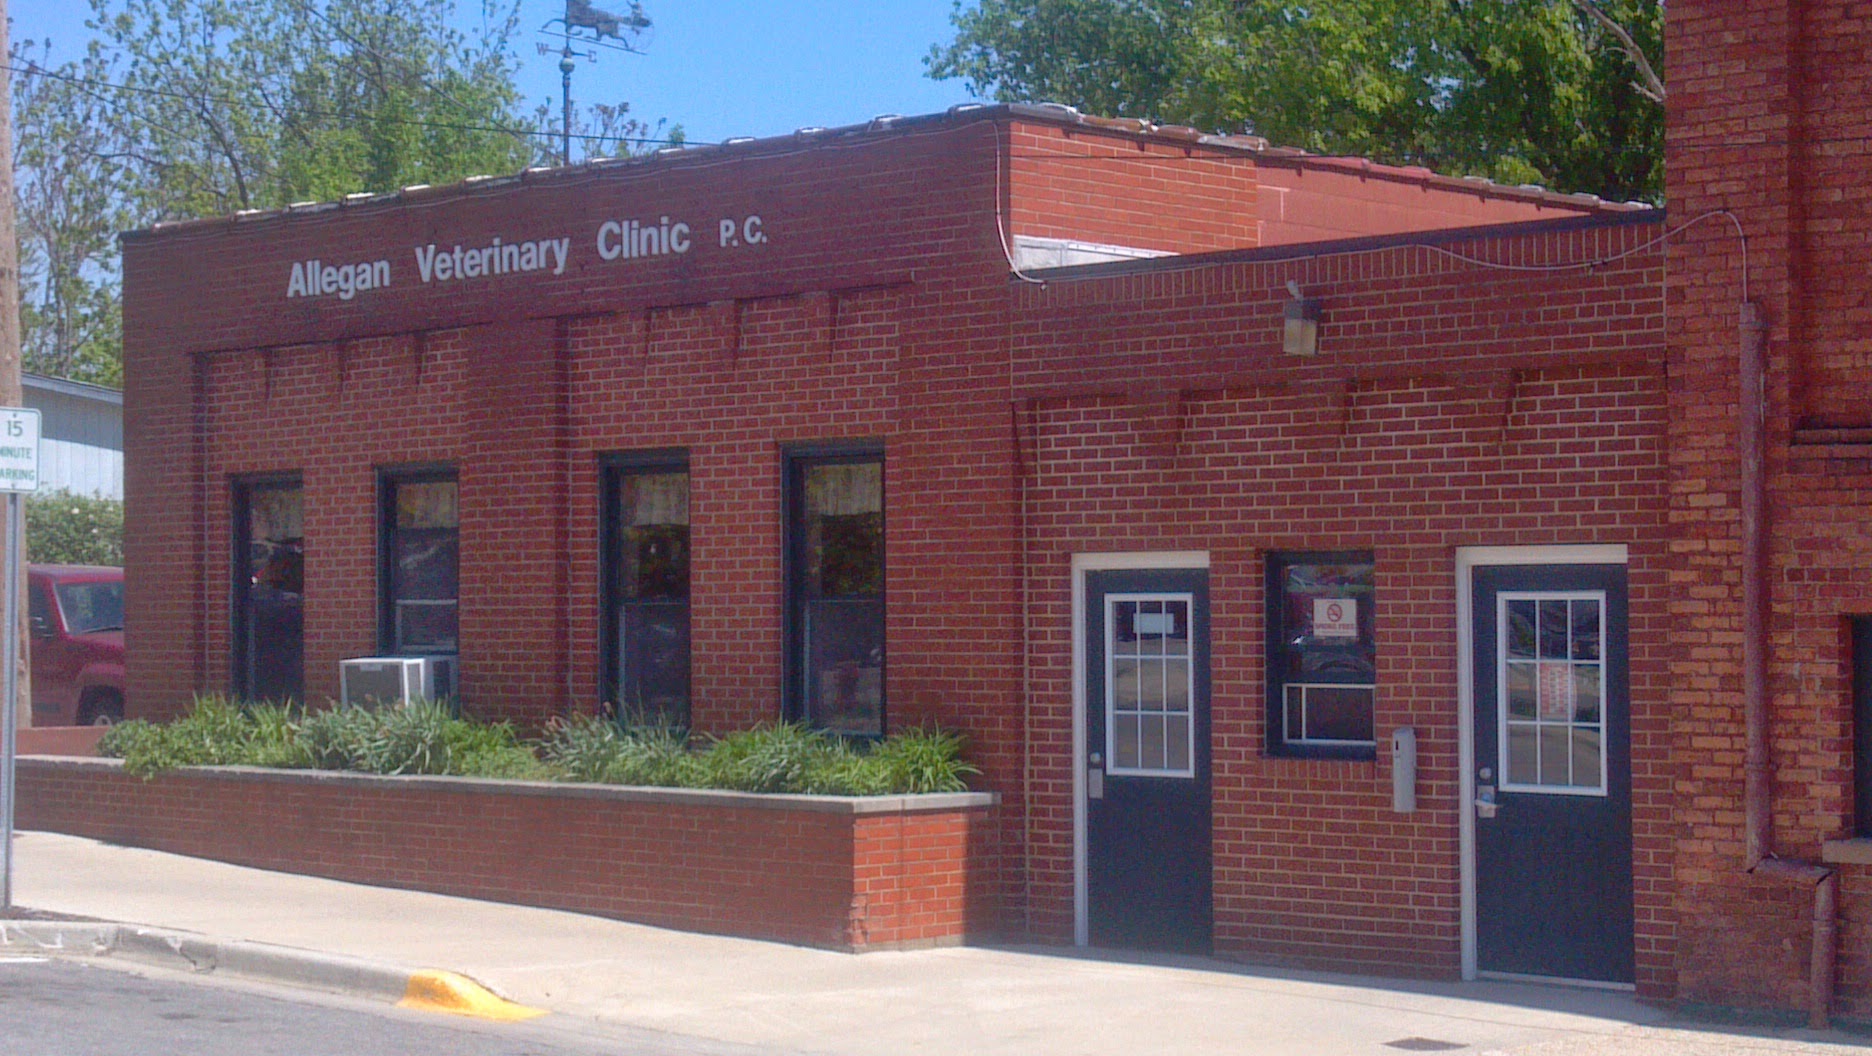 Allegan Veterinary Clinic